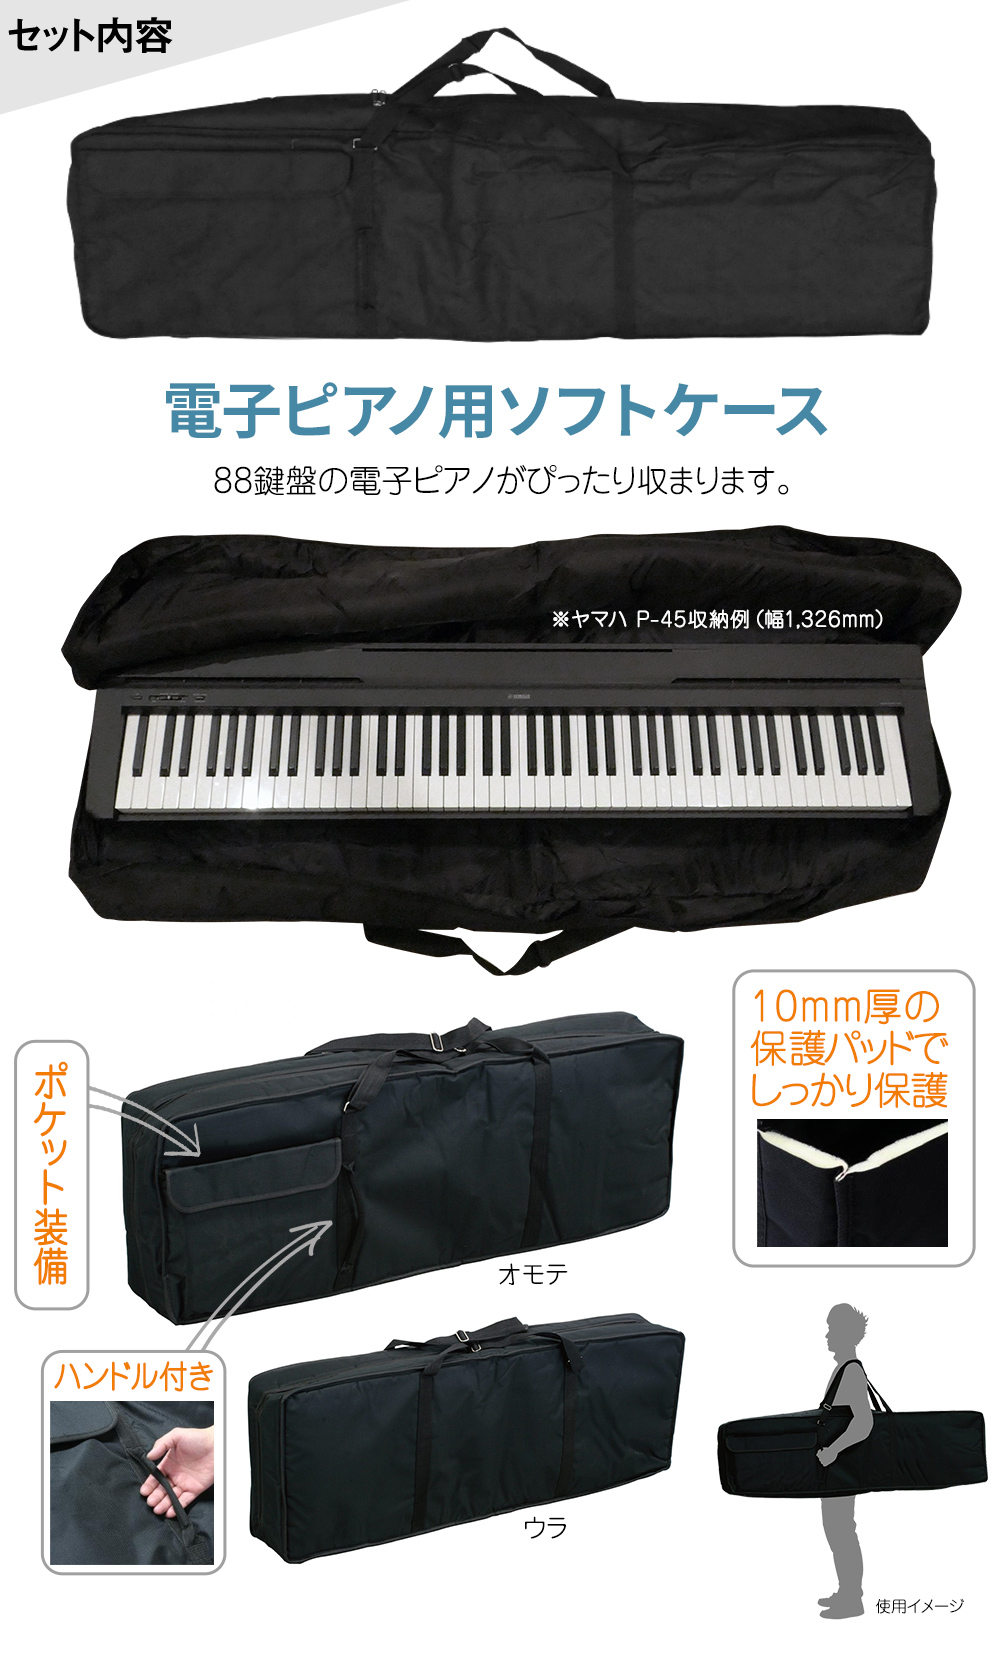 本物の YAMAHA ヤマハ 電子ピアノ P-125 Xスタンド・Xイス・ケースセット 88鍵盤 ブラック B P-125a Pシリーズ デジタル楽器 